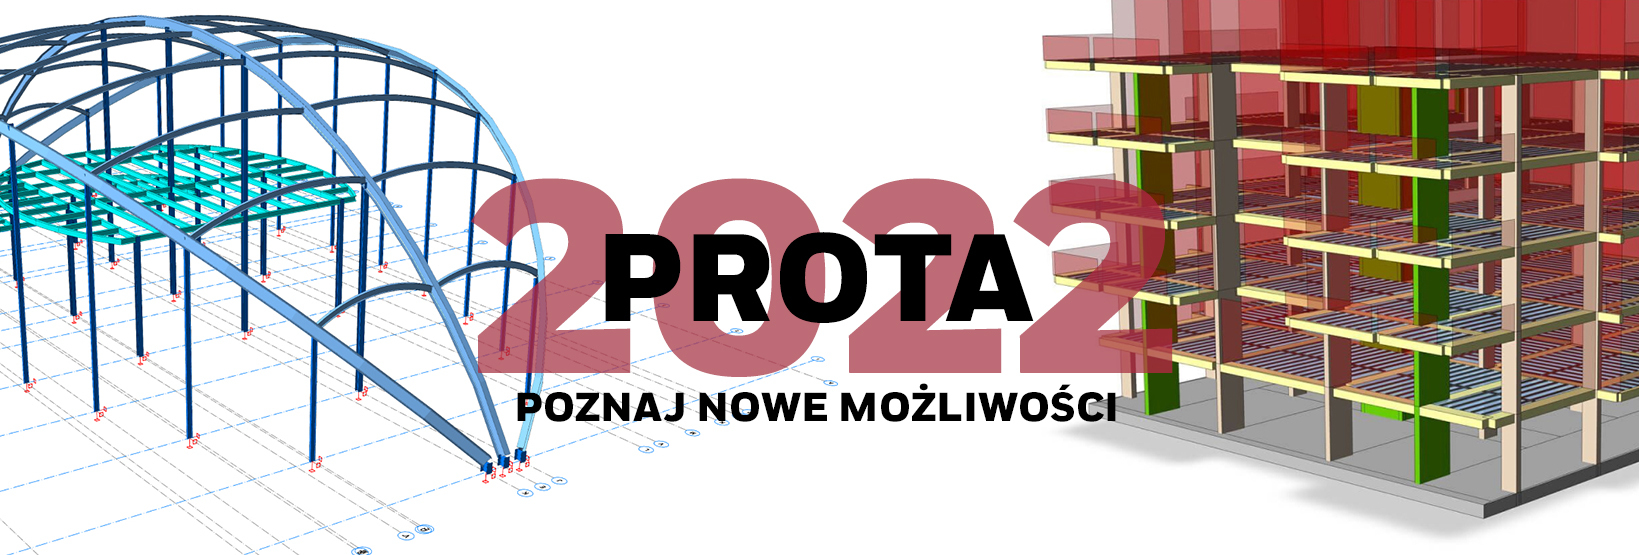 Prota 2022 – poznaj nowe możliwości